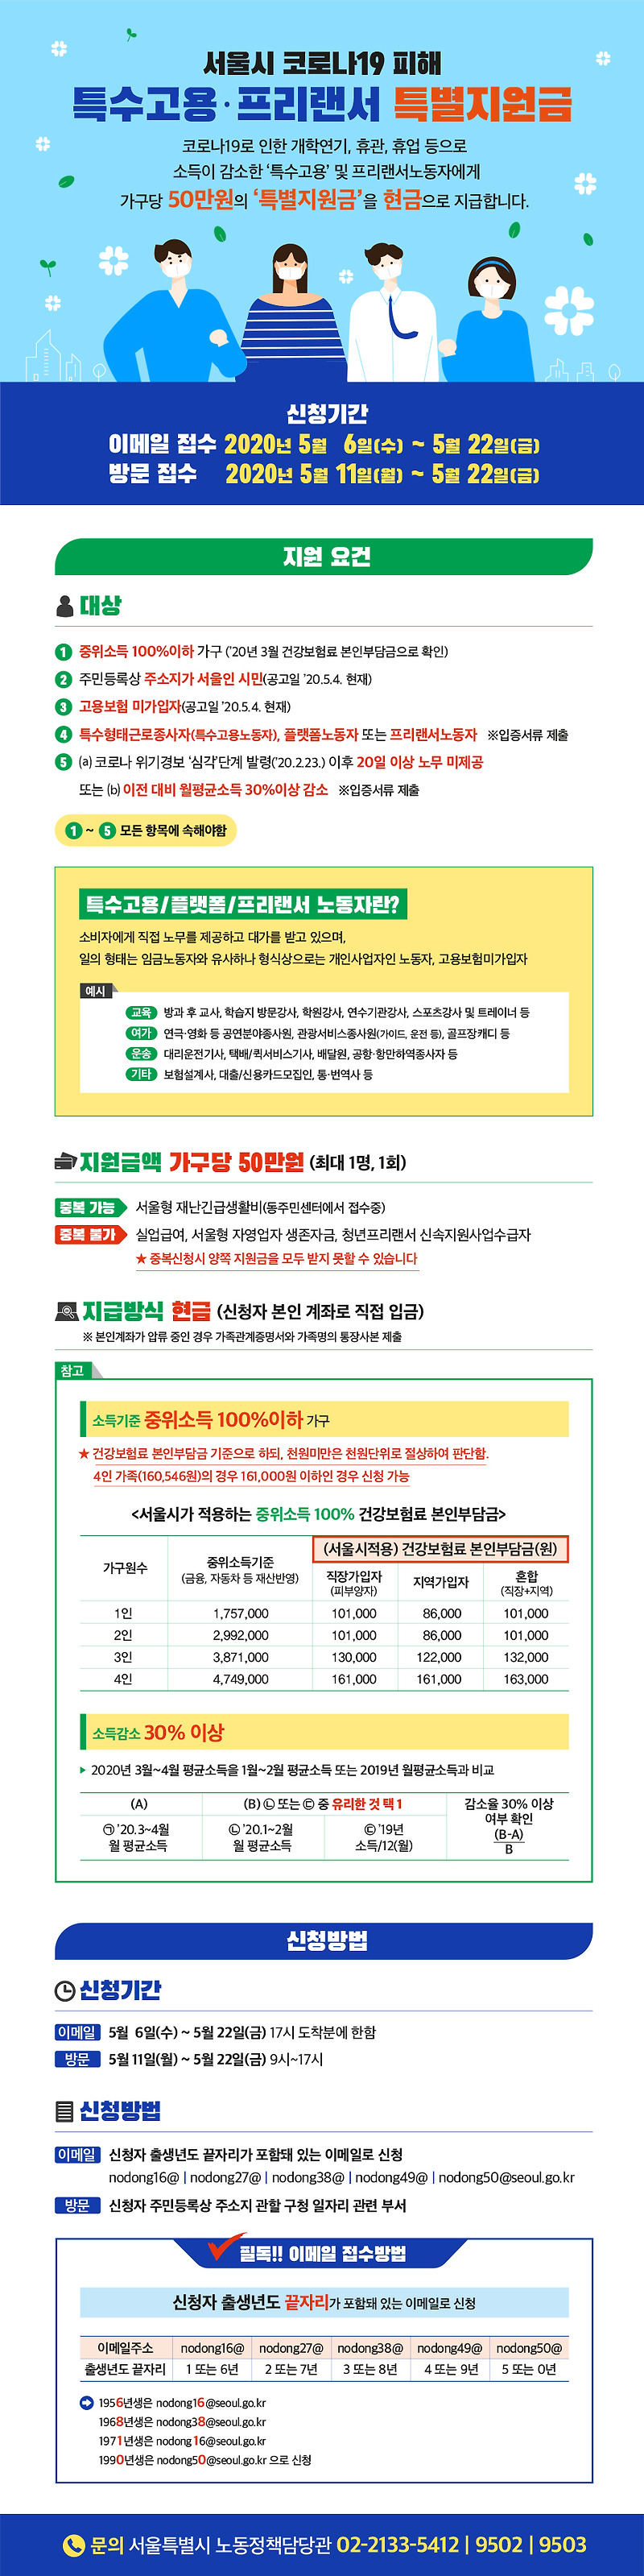 서울 코로나 프리랜서 지원금 신청 방법 신청기간